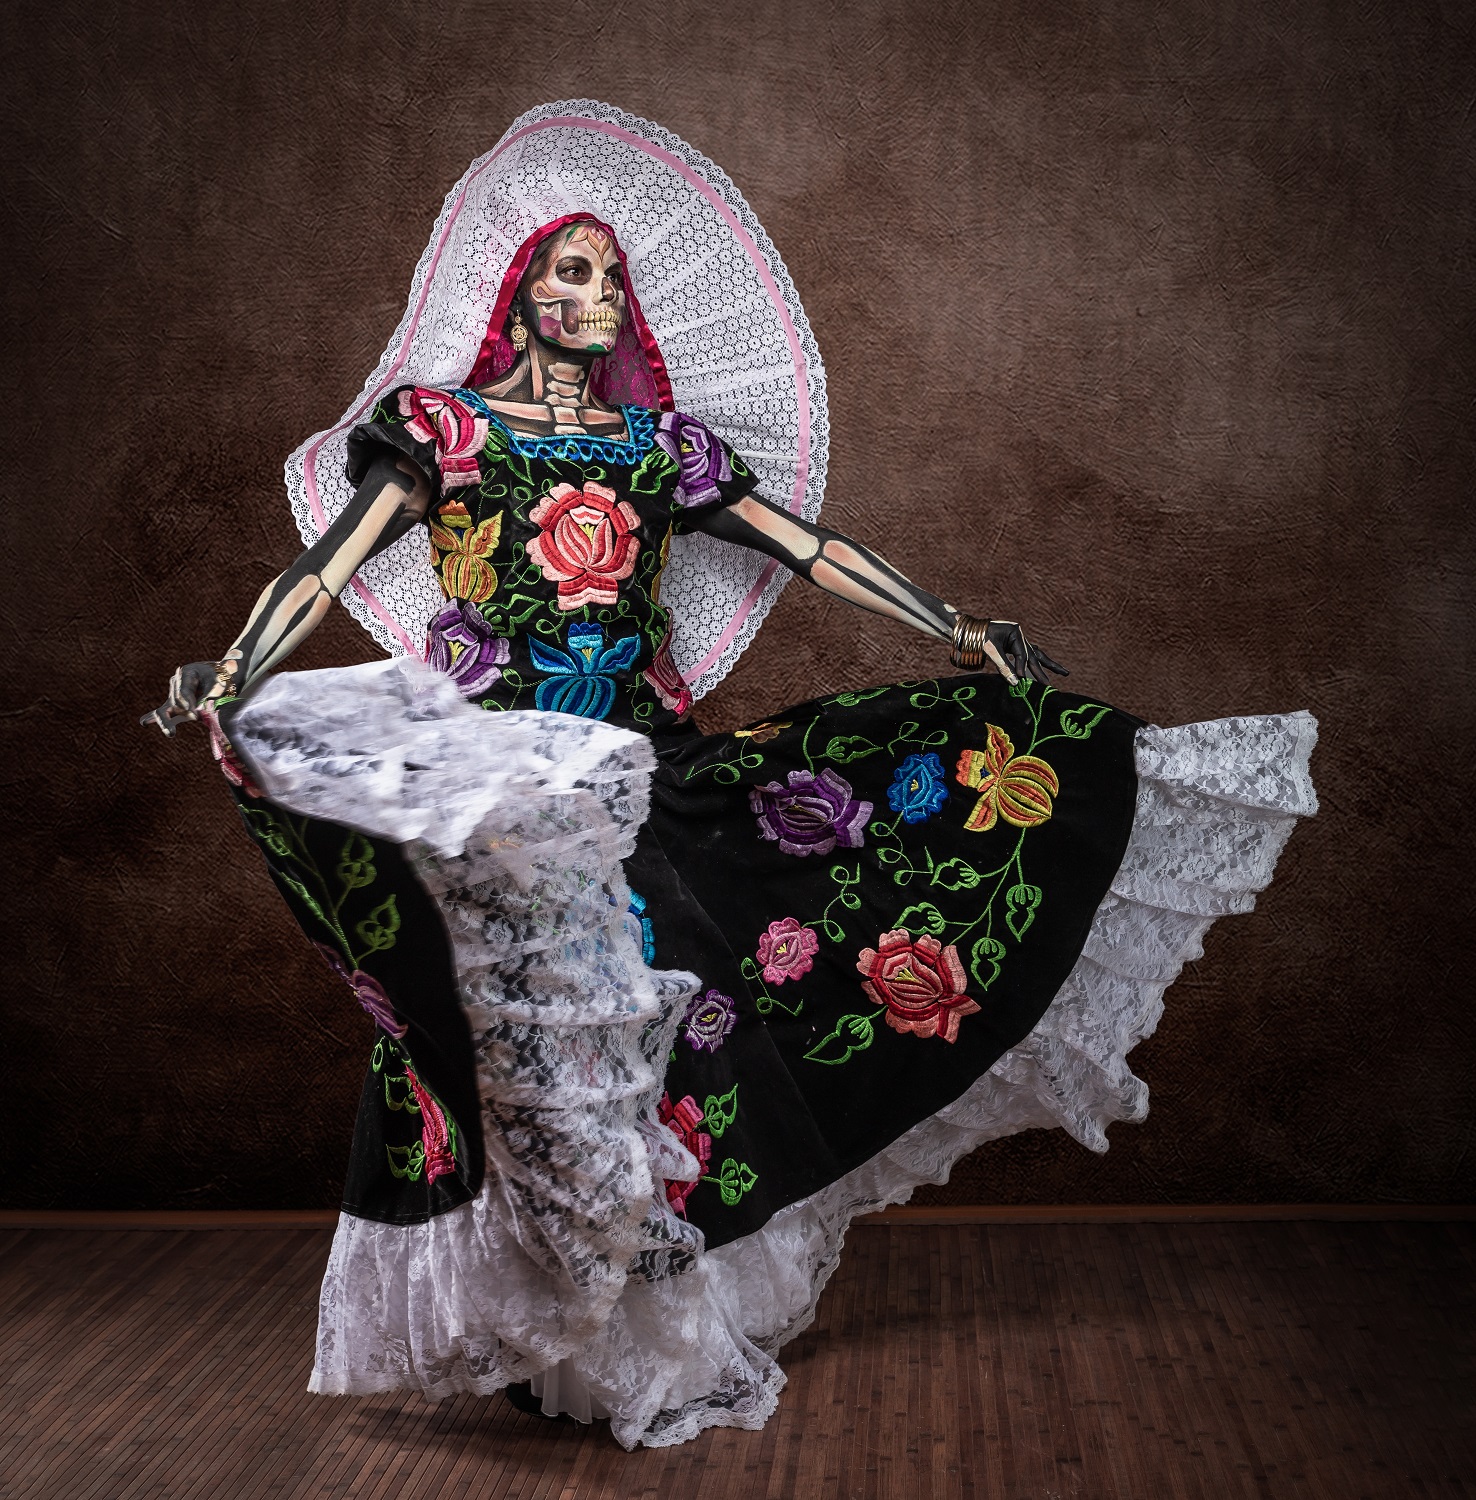 La Calavera Catrina Costume for Dia de Los Muertos Mexico